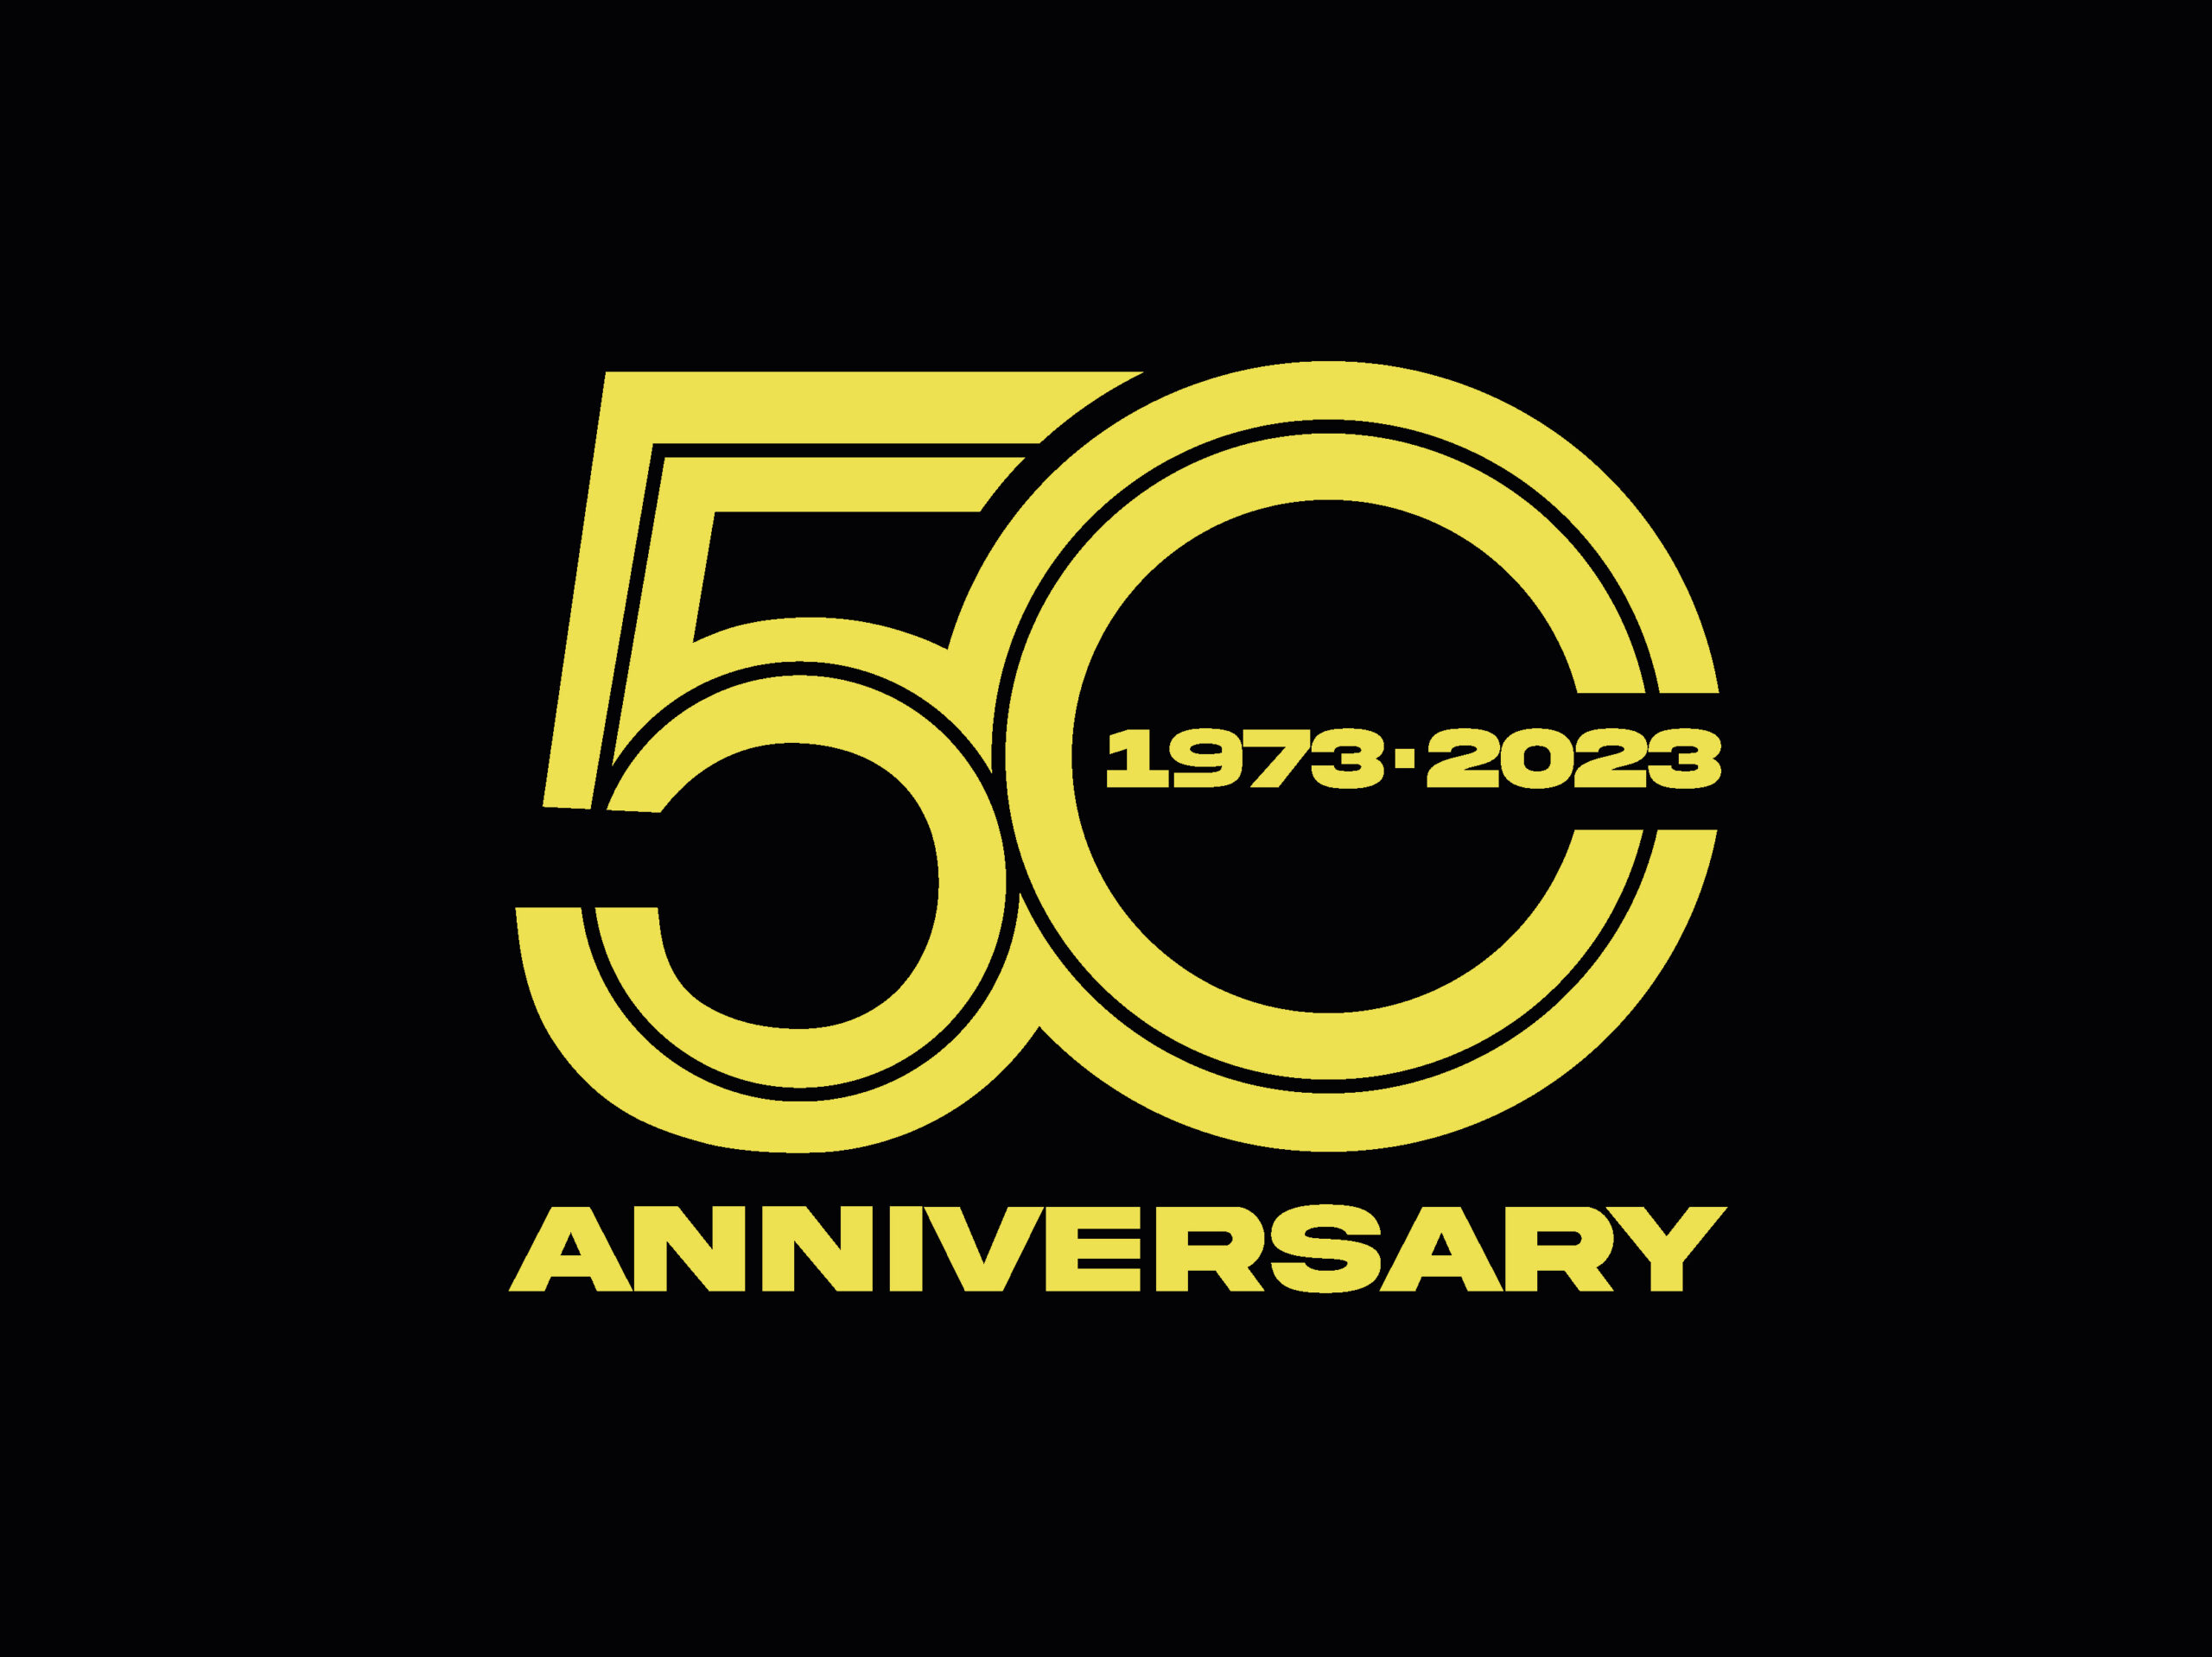 Che Storia! VTN festeggia 50 Anni di attività